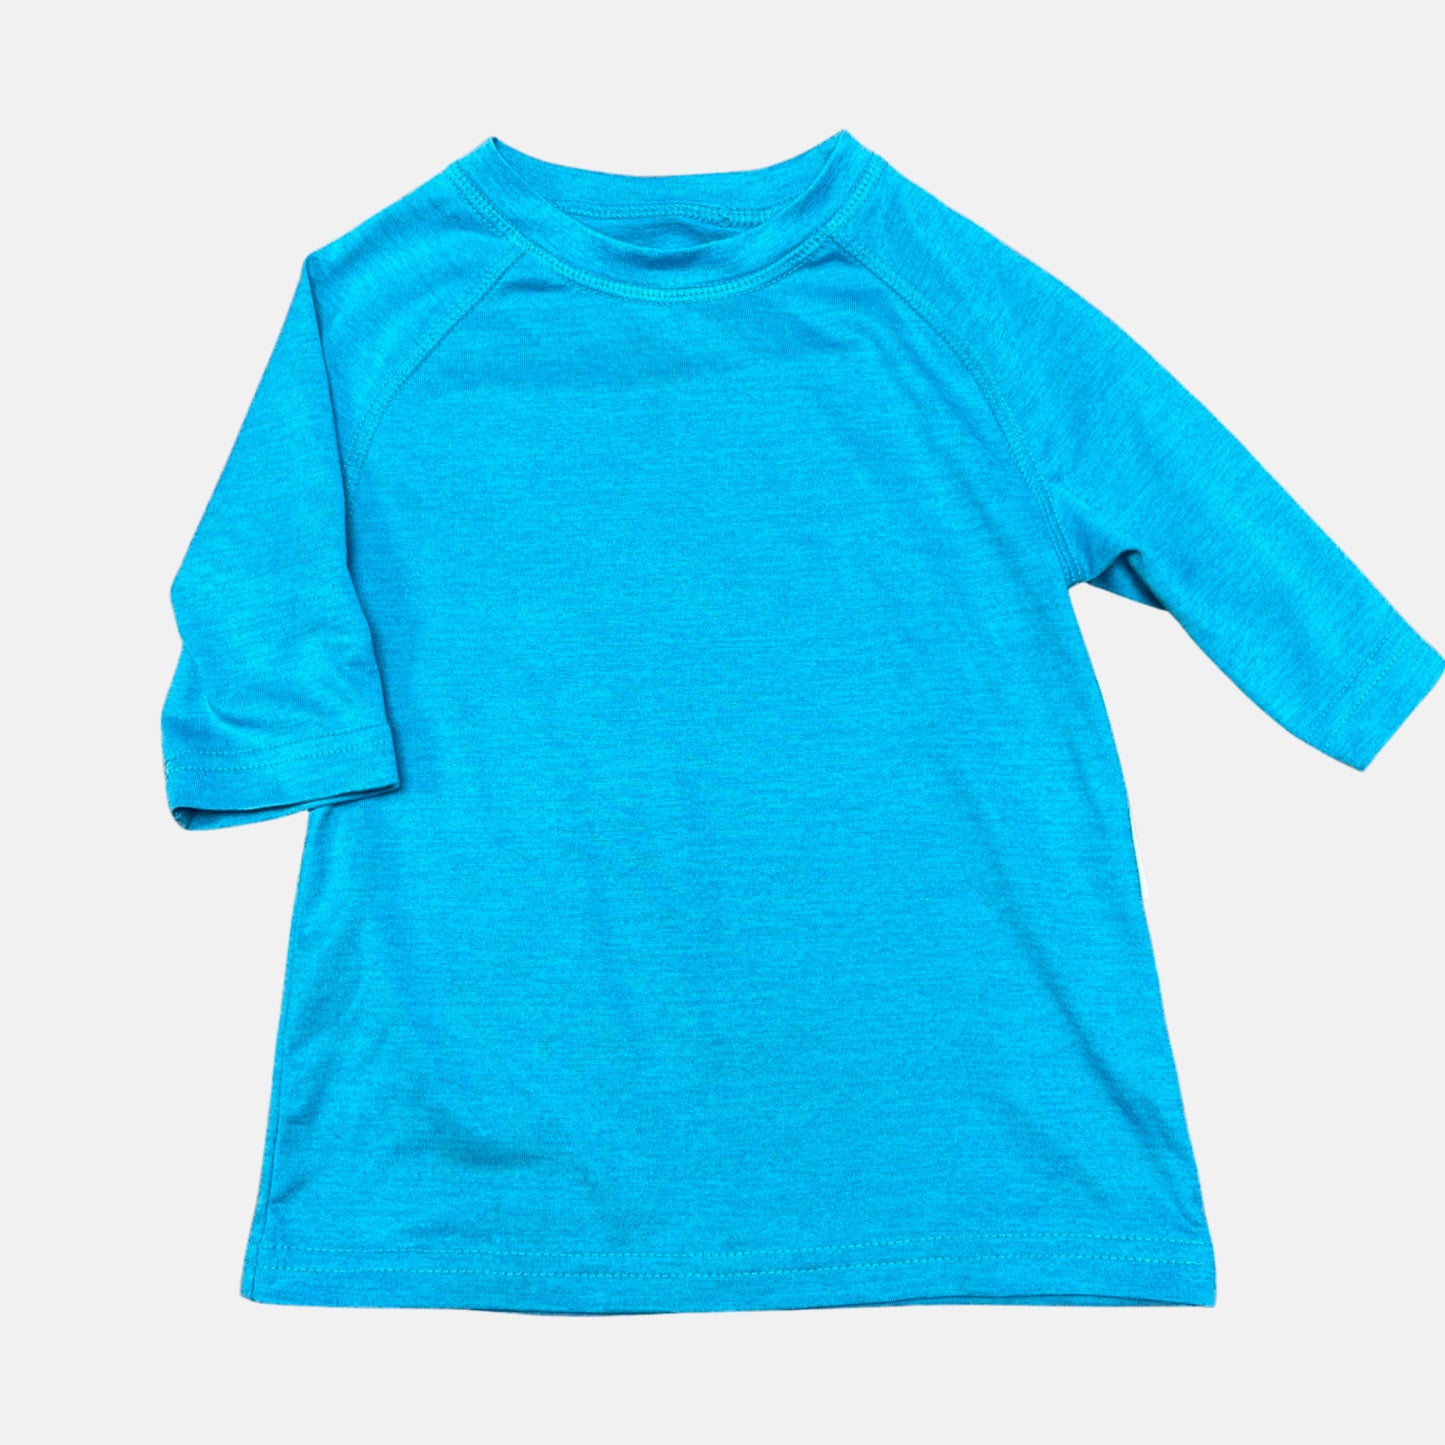 4-5 Turquoise Shirt